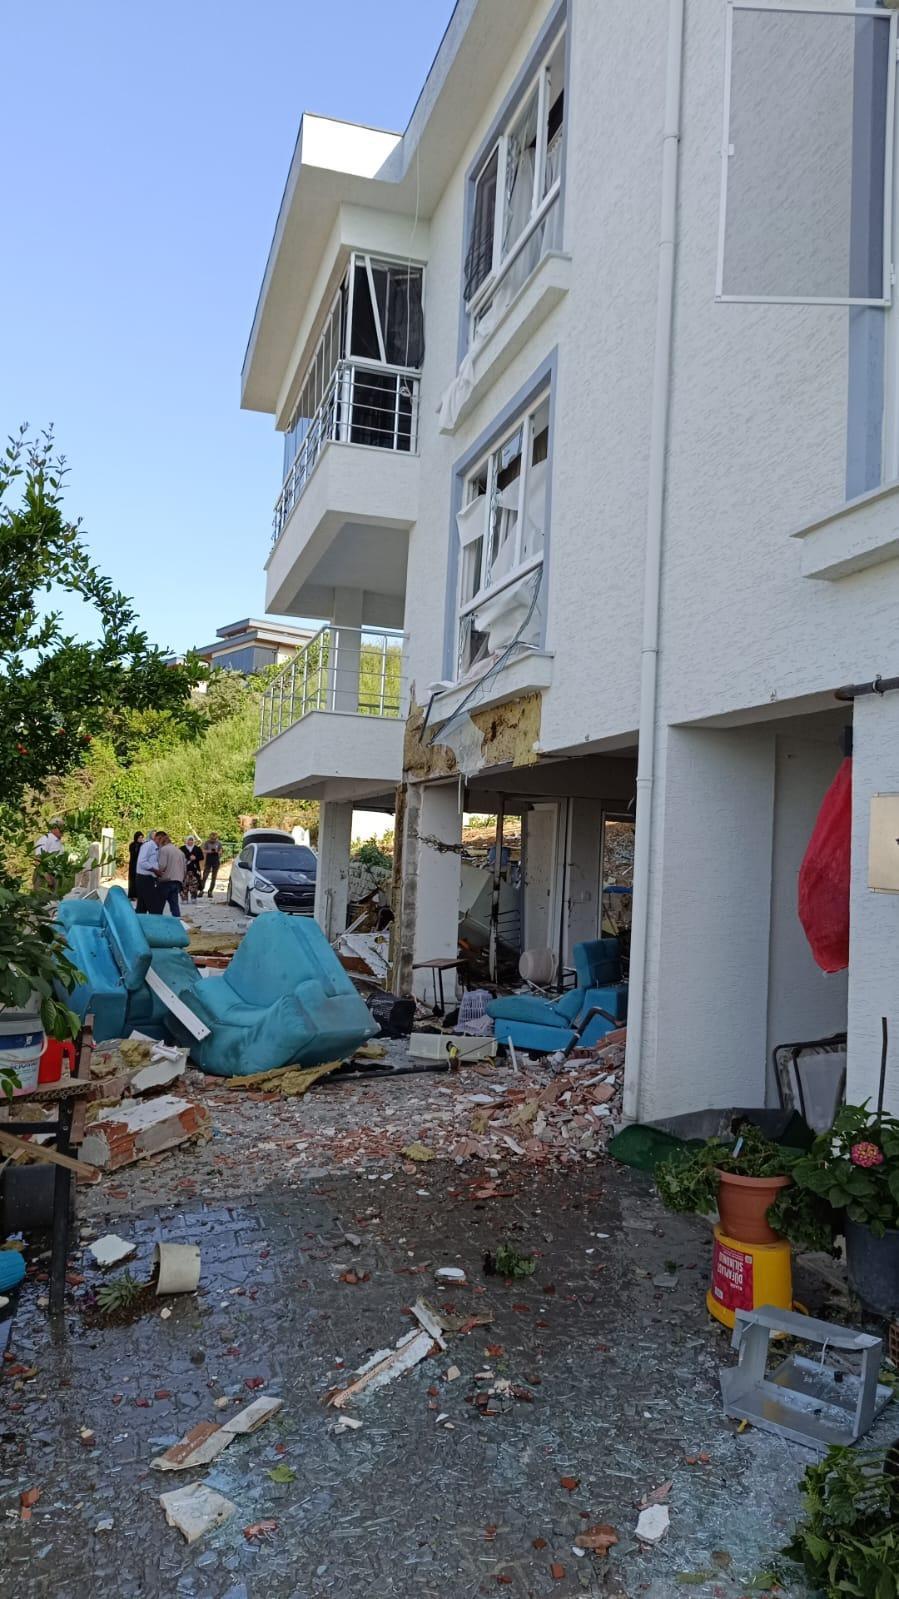 Ev sahibi-kiracı tartışması felaketle sonuçlandı! Doğal gaz vanasını açıp evi patlattı